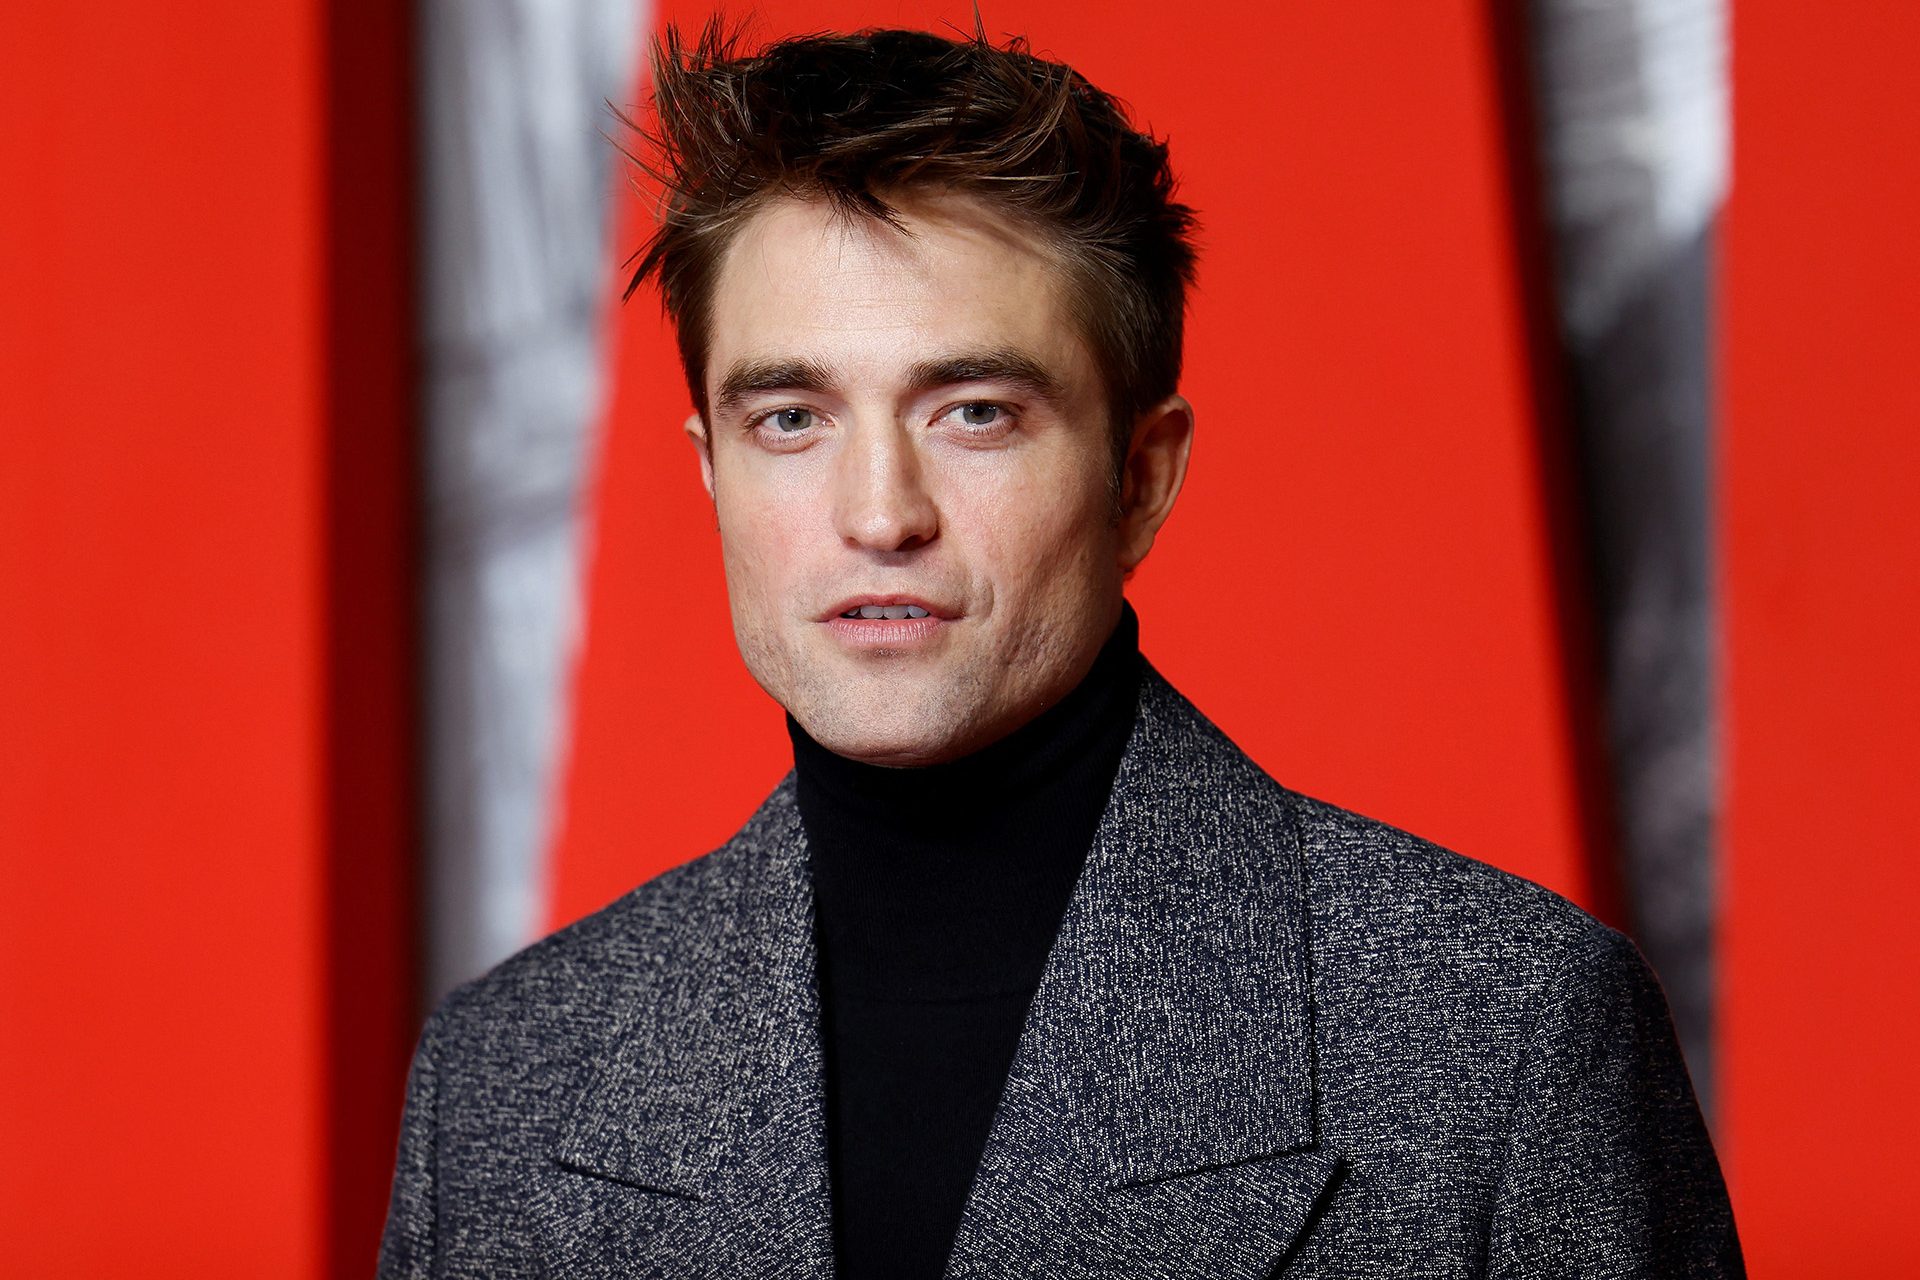 Selon une étude généalogique, Robert Pattinson (de la saga 'Twilight') serait un parent du comte Dracula !